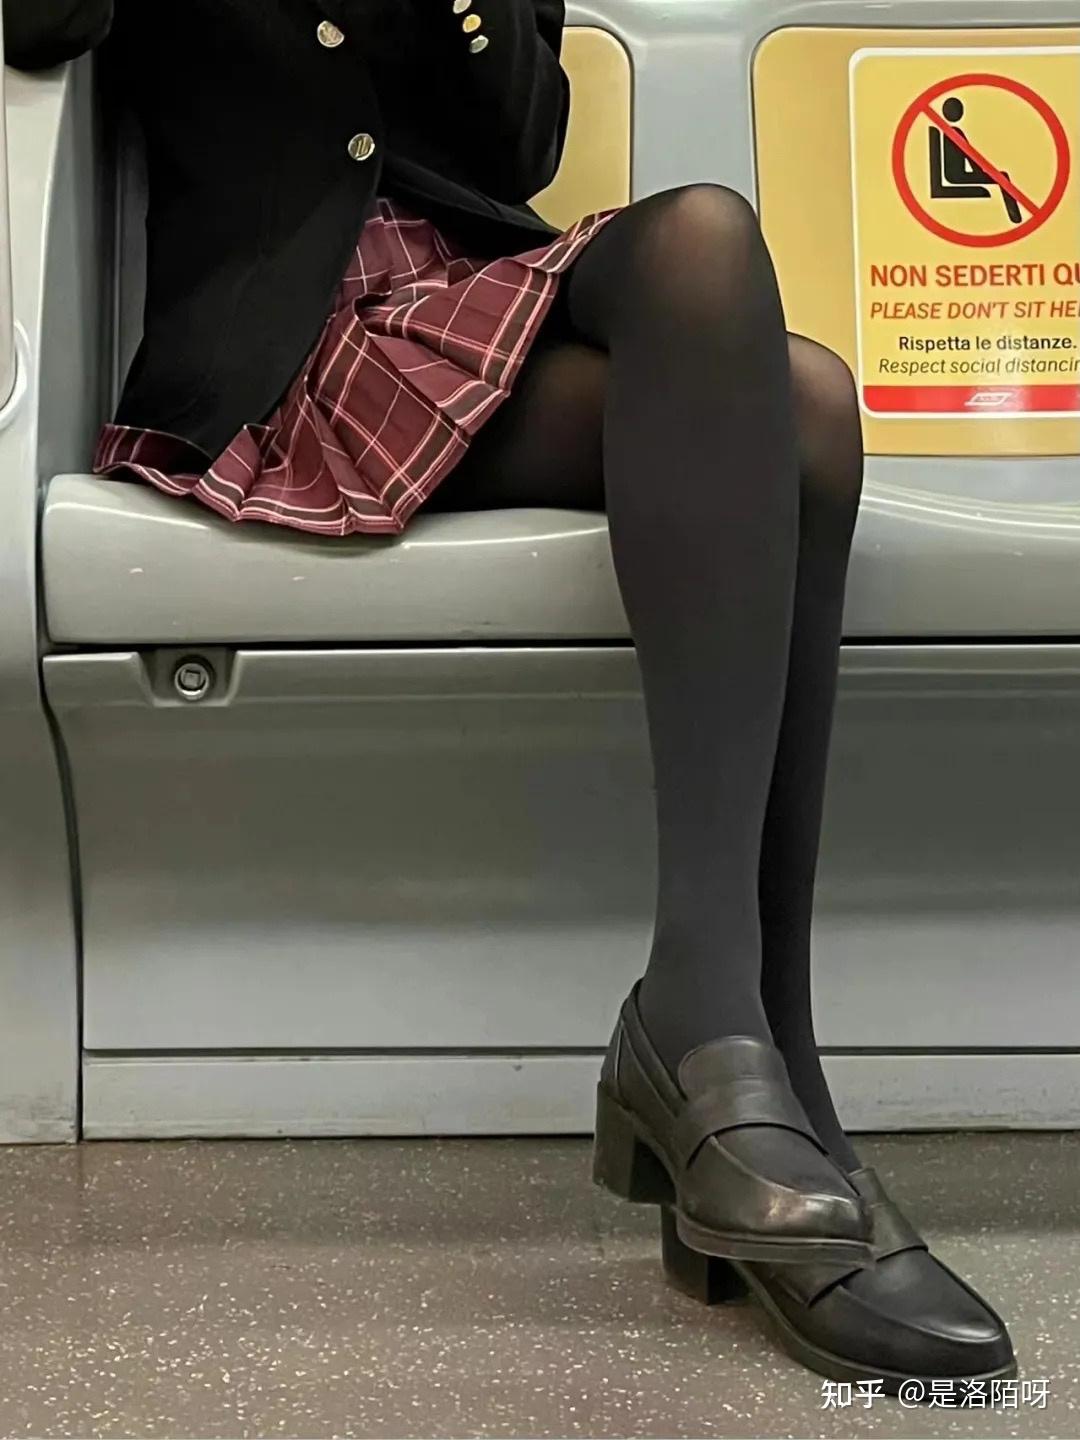 有些女的喜欢坐在椅子上脱下鞋抚摸自己的丝袜腿不知为什么会有这样的